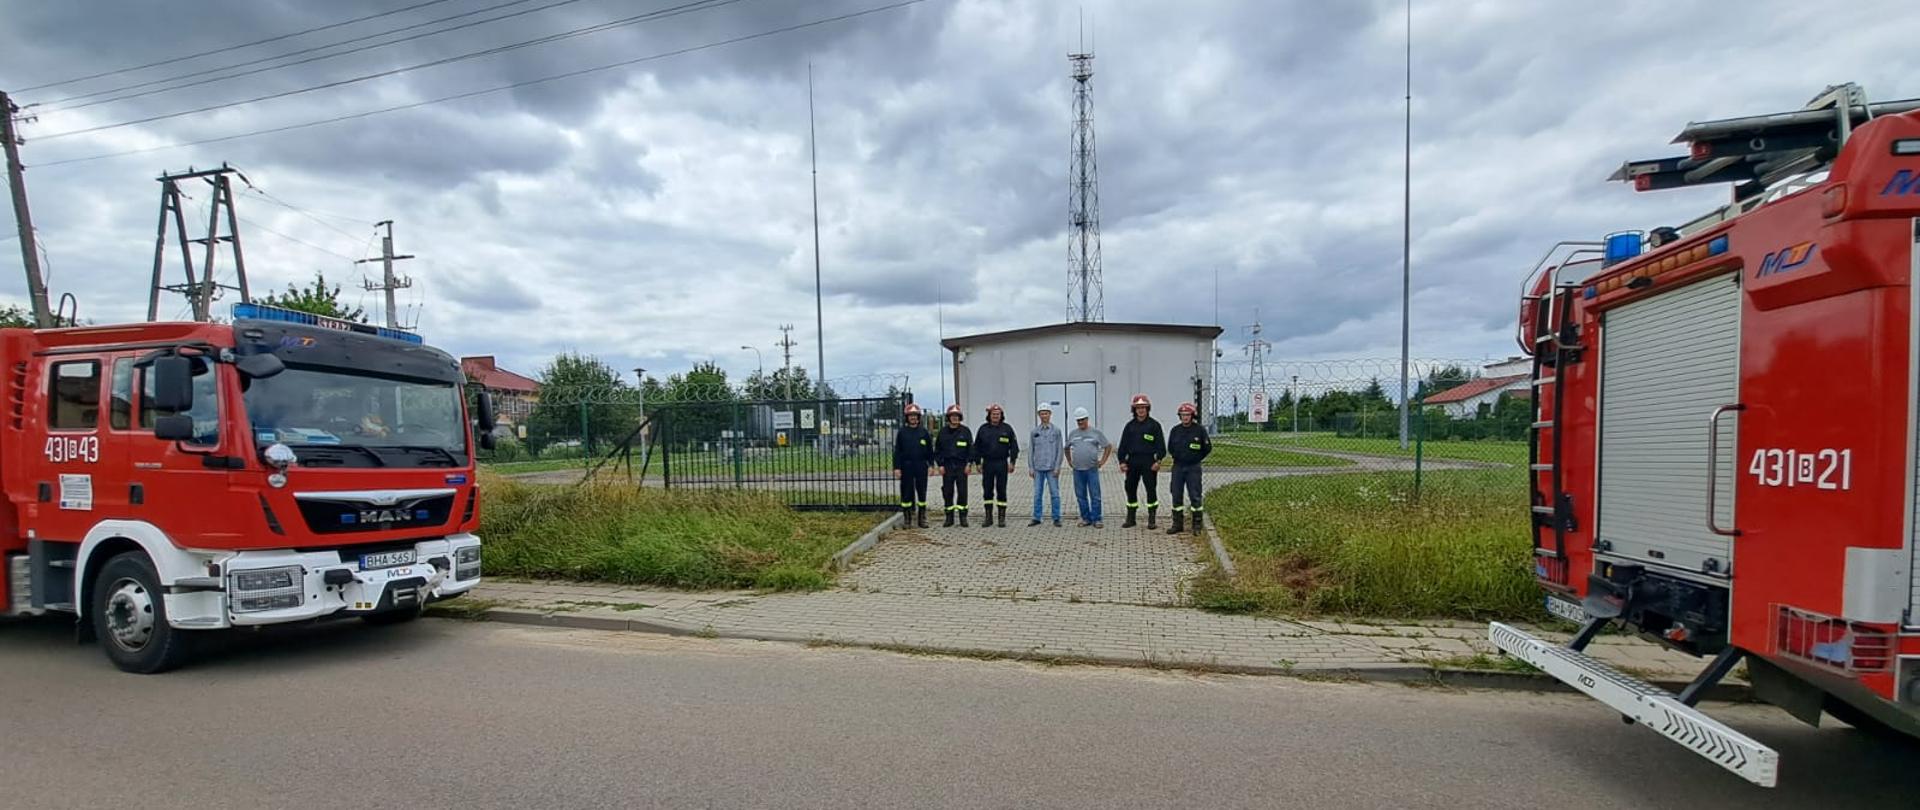 Ćwiczenia doskonalące współdziałanie funkcjonariuszy Państwowej Straży Pożarnej z pracownikami Polskiej Grupy Energetycznej